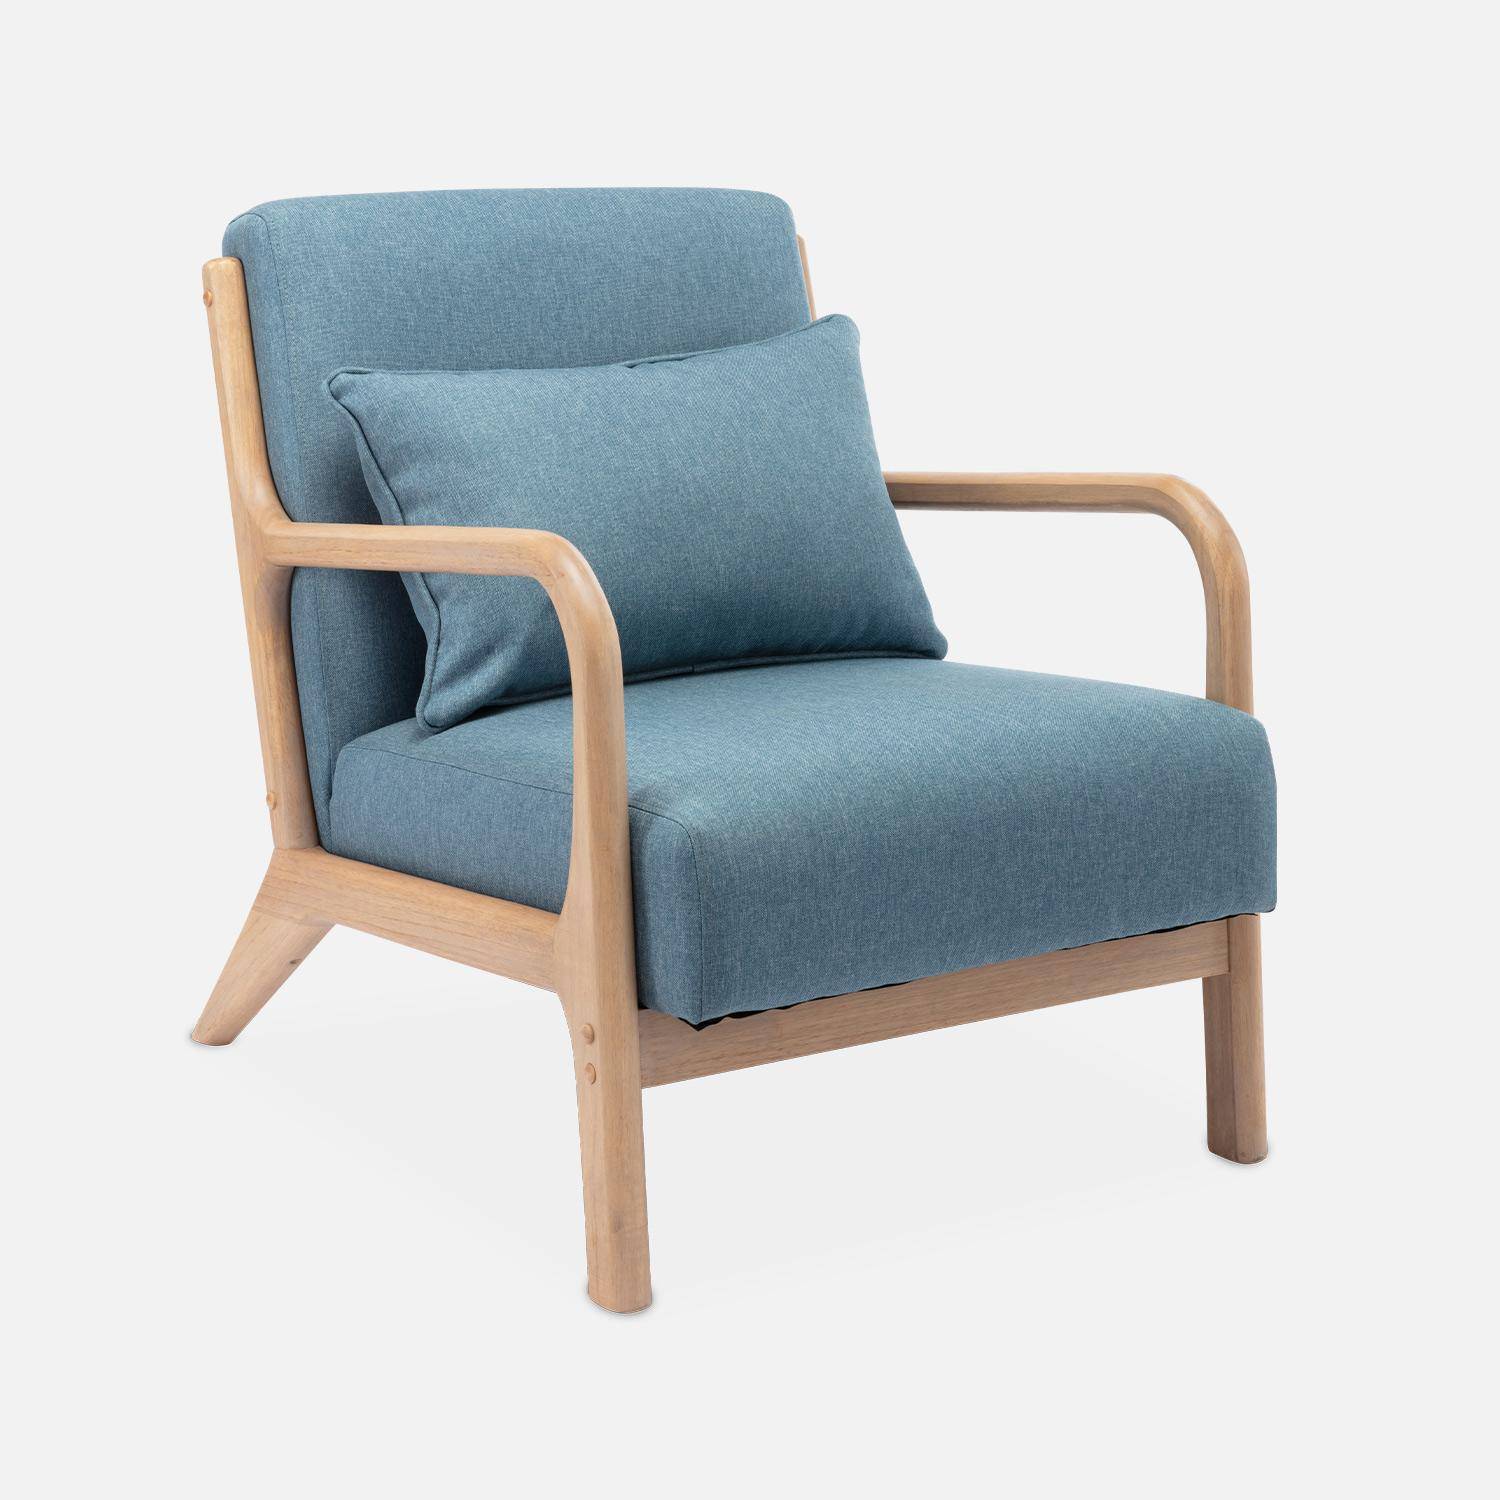 Sillón de diseño en madera y tela, 1 asiento recto fijo, patas de compás escandinavas, asiento cómodo, armazón de madera maciza, azul Photo4